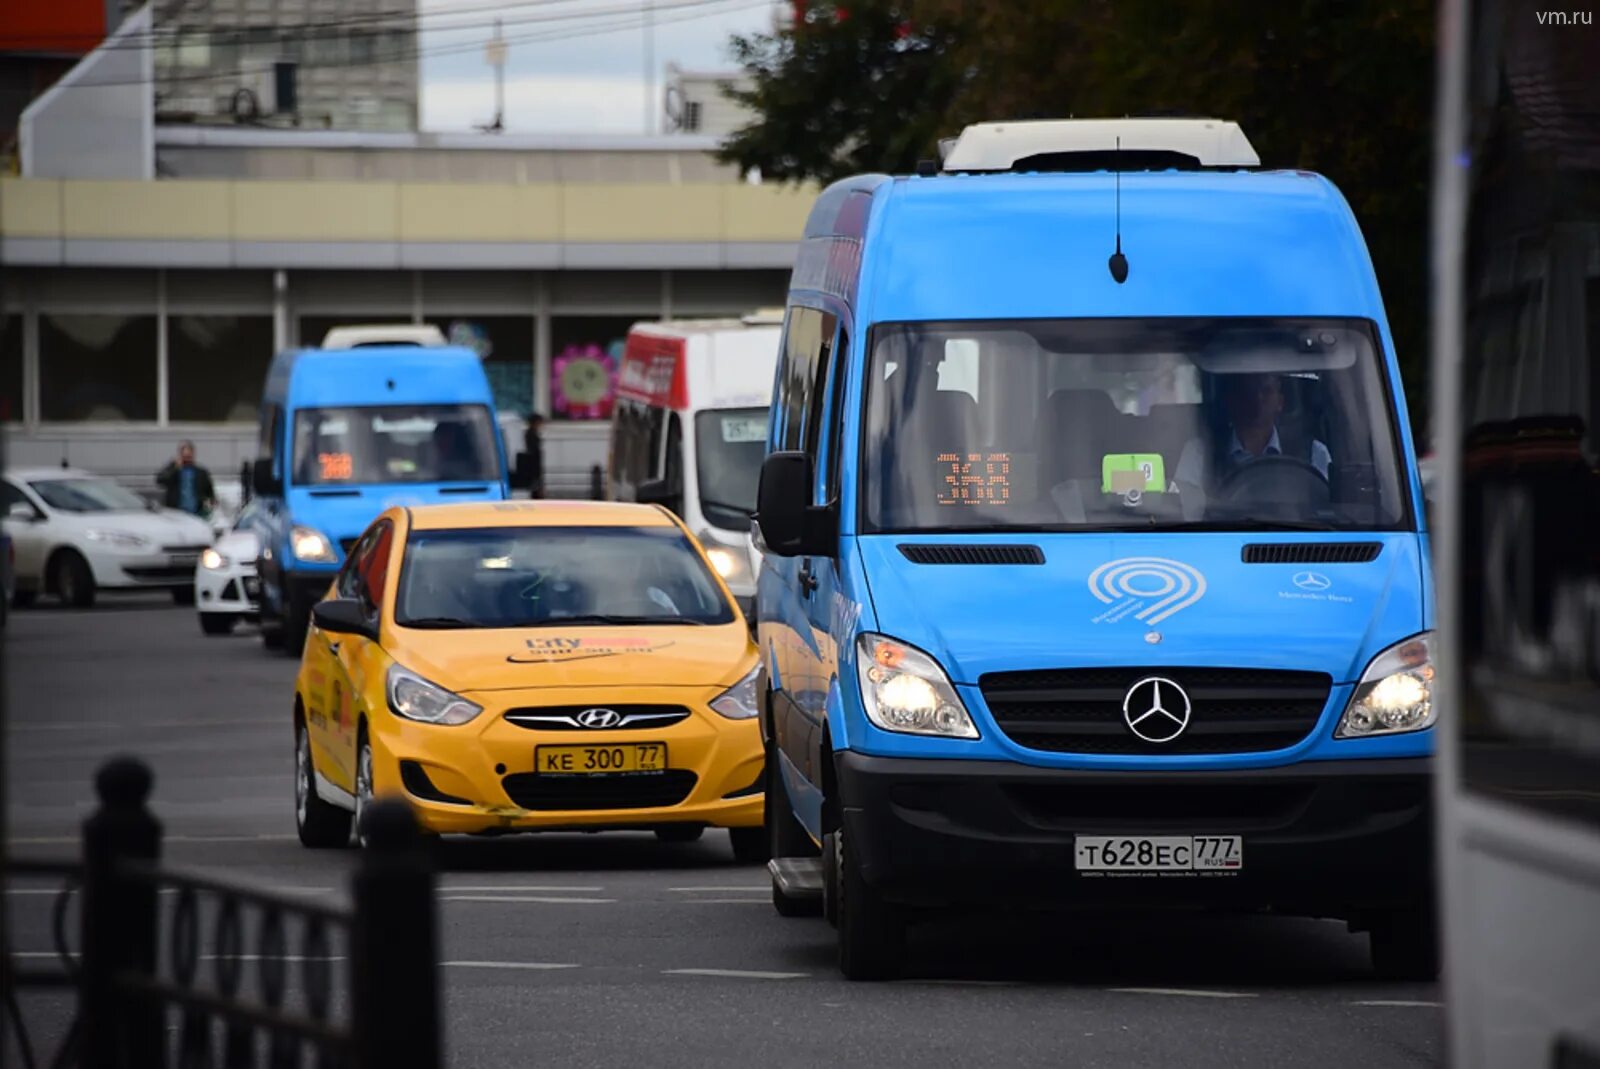 Маршрутное такси 150. Fiat Ducato автобус Мосгортранс. Общественный транспорт такси. Маршрутное такси в Москве. Автобус и автомобиль.